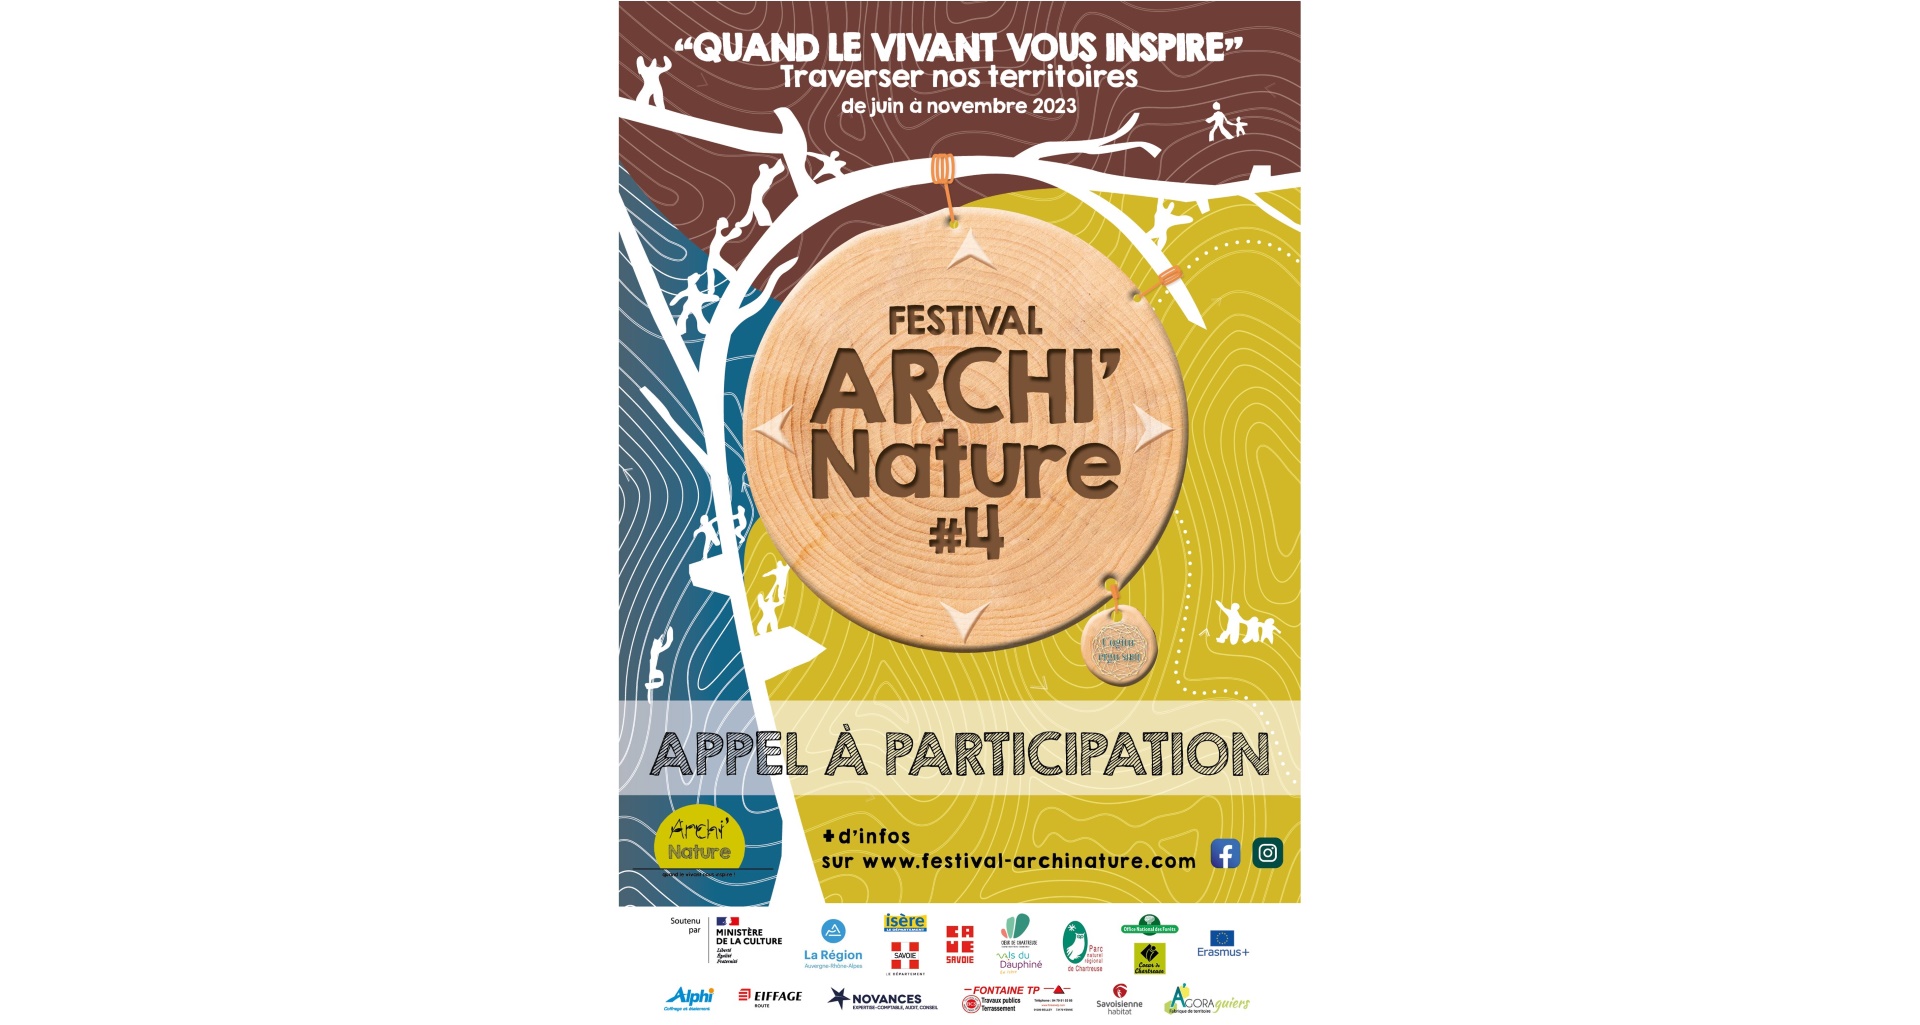 Festival Archi'Nature - Quand le vivant vous inspire!